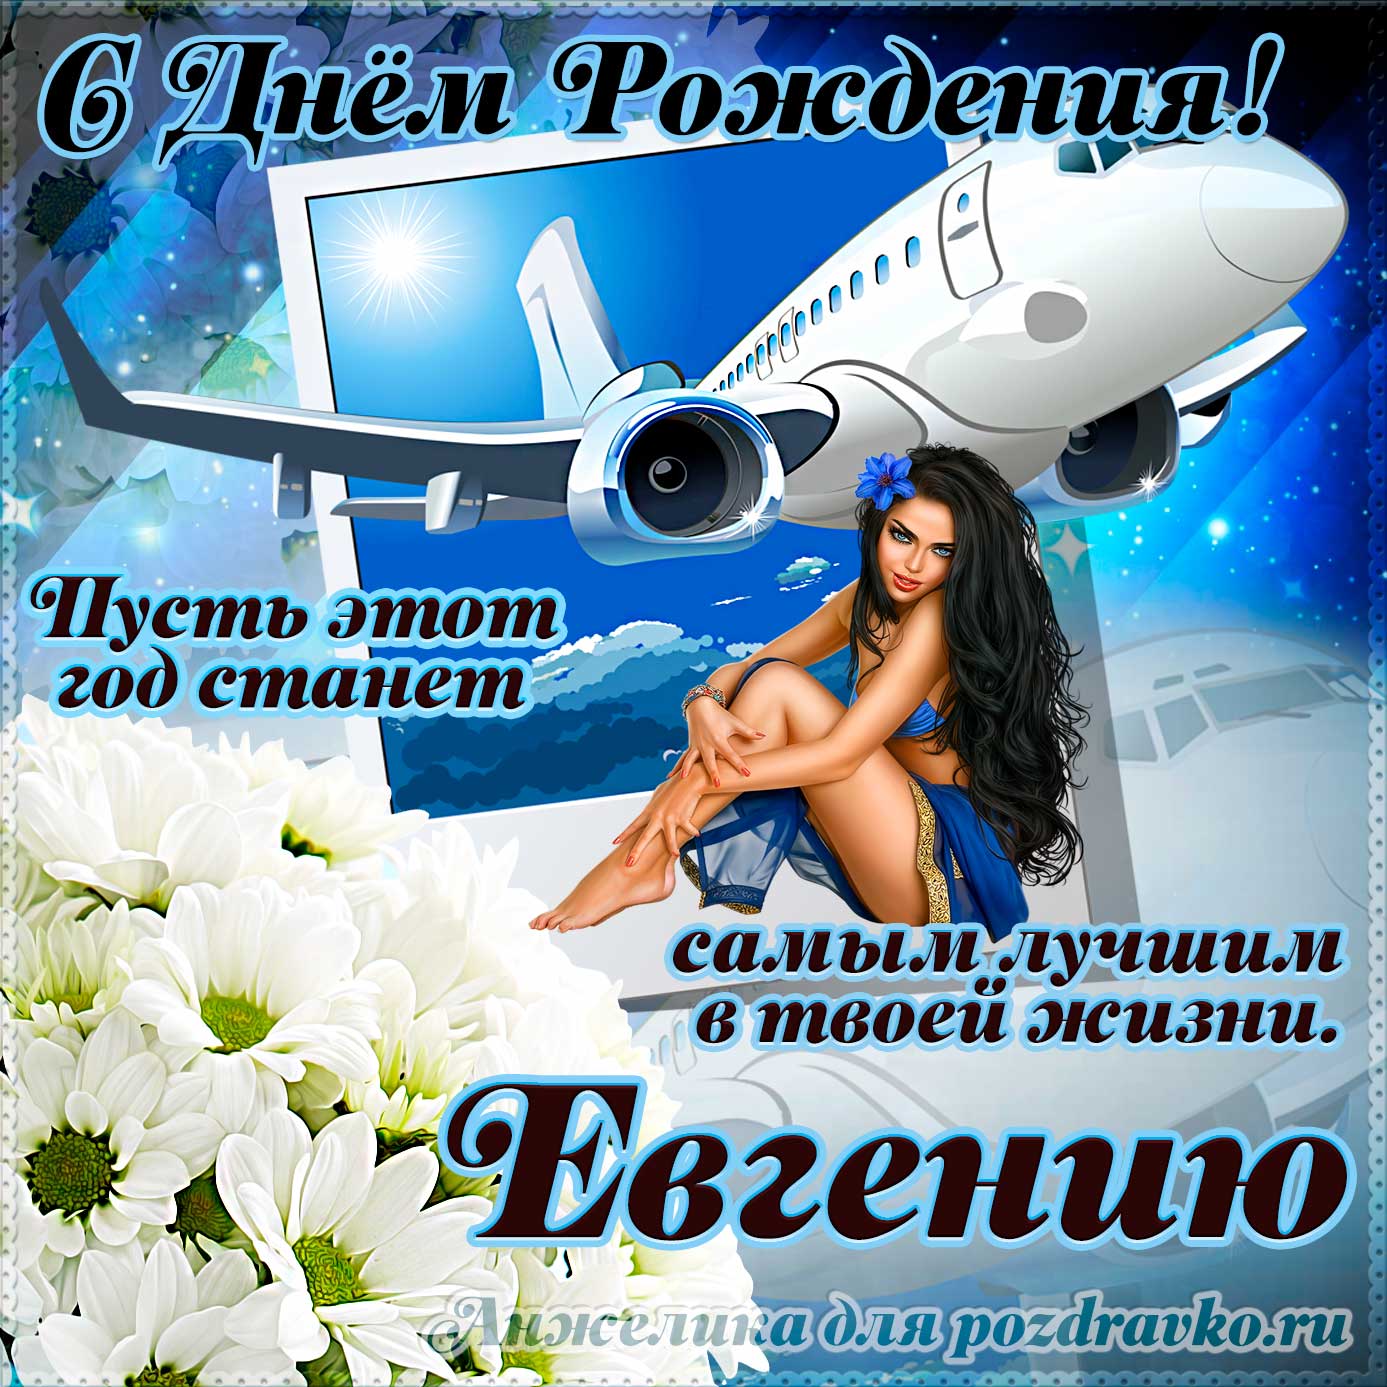 Открытка - Евгению на день рождения с красивым пожеланием самолетом и девушкой. Скачать бесплатно или отправить картинку.